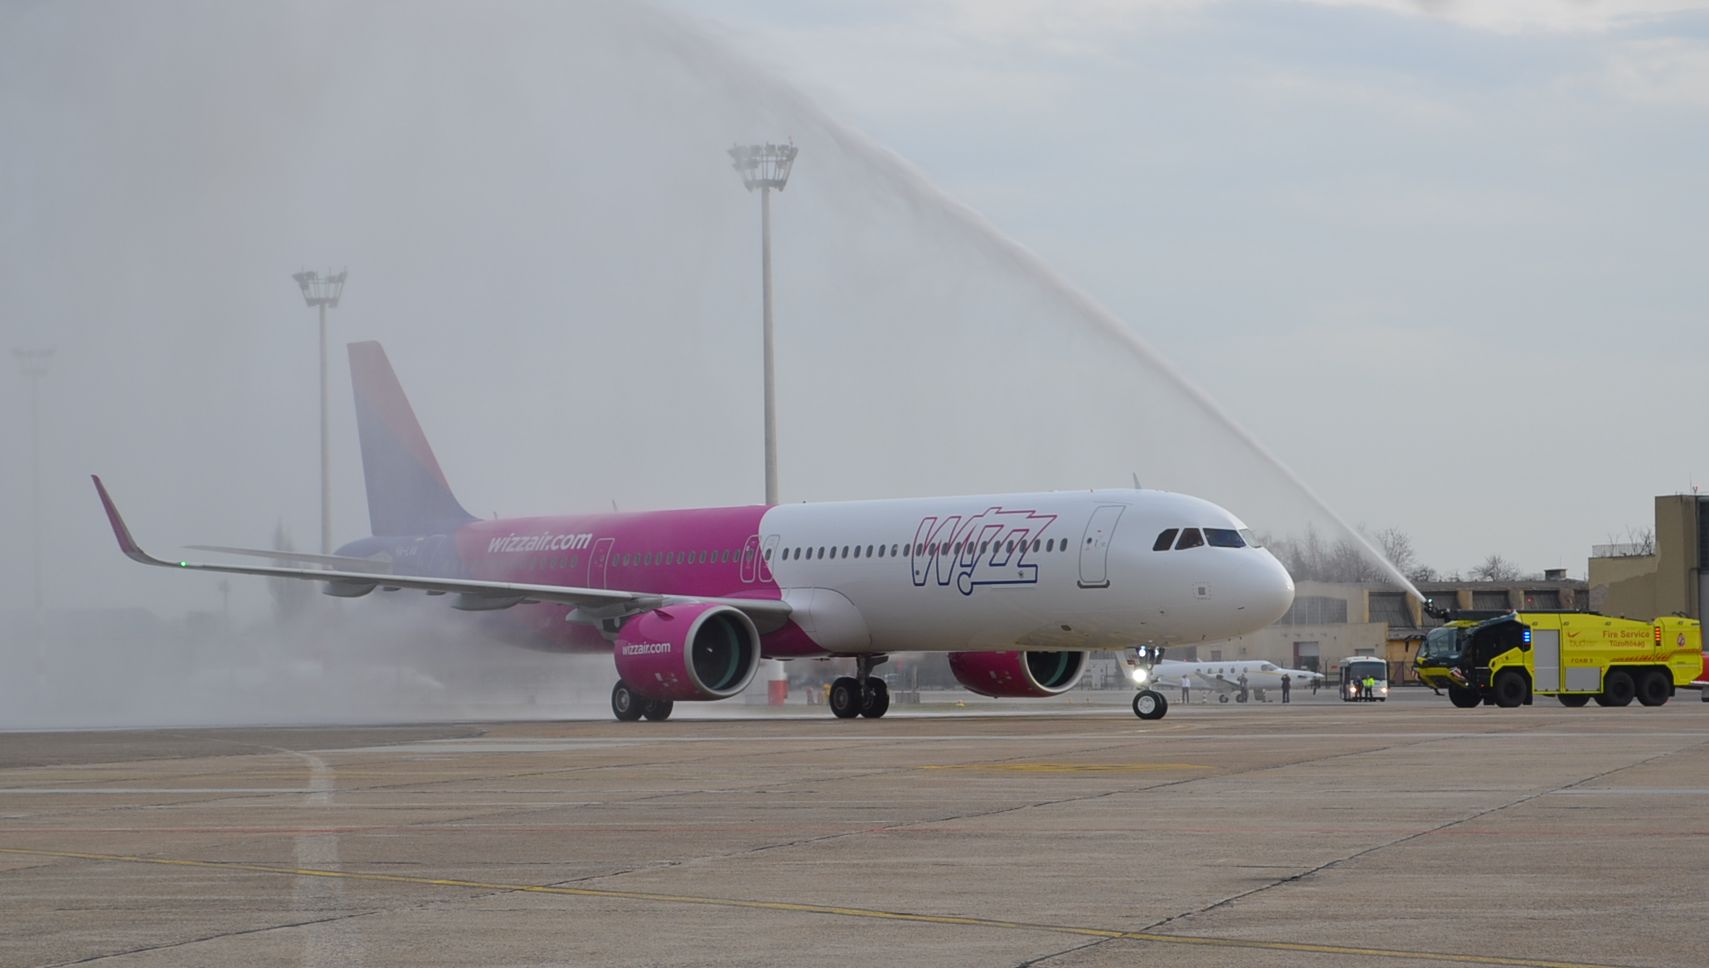 Tizenöt éve repül Budapestről a Wizz Air, ez idő alatt Kelet-Európa piacvezető légitársaságává lépett elő (fotó: Márványi Péter)